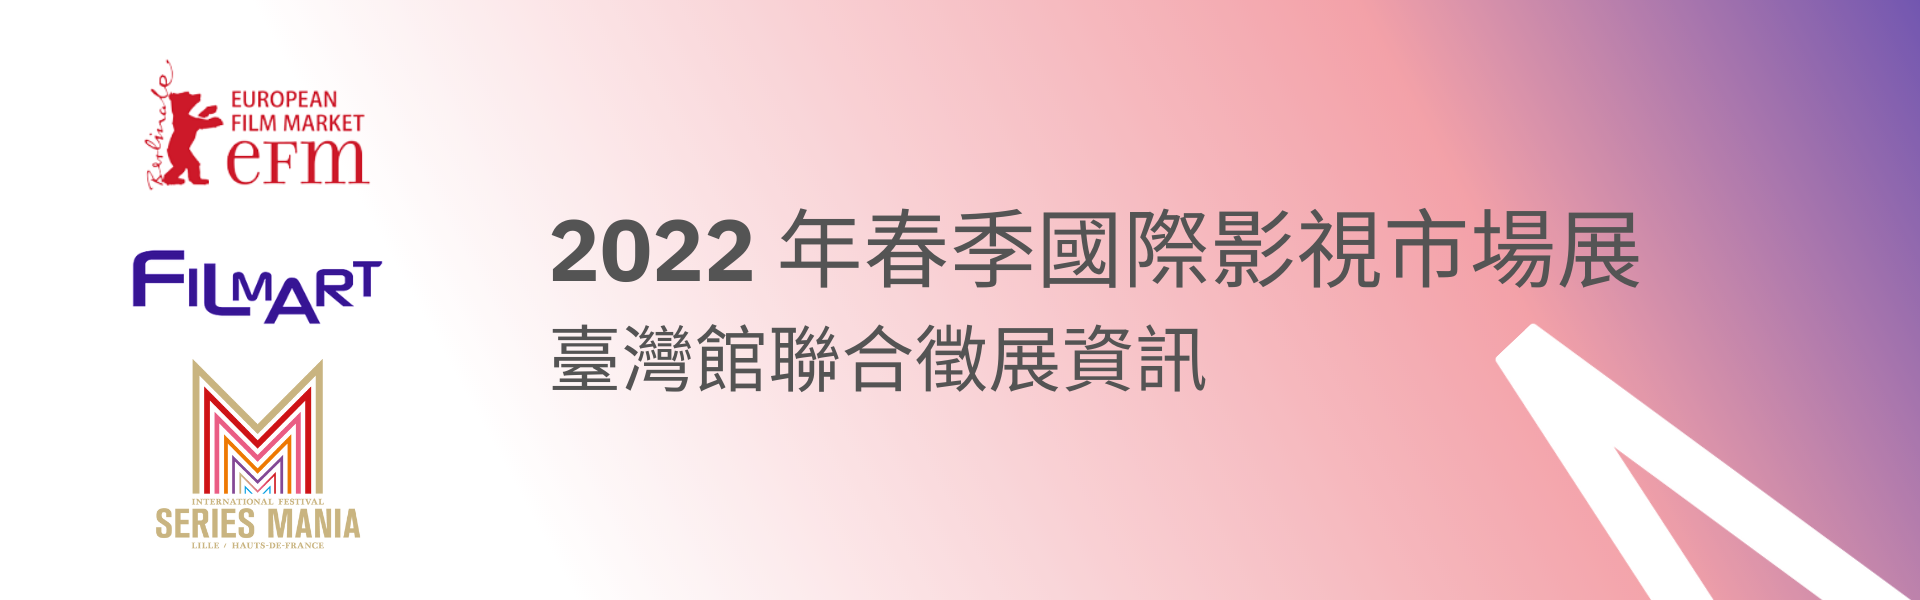 2022 年春季國際影視市場展臺灣館聯合徵展資訊 (已截止)